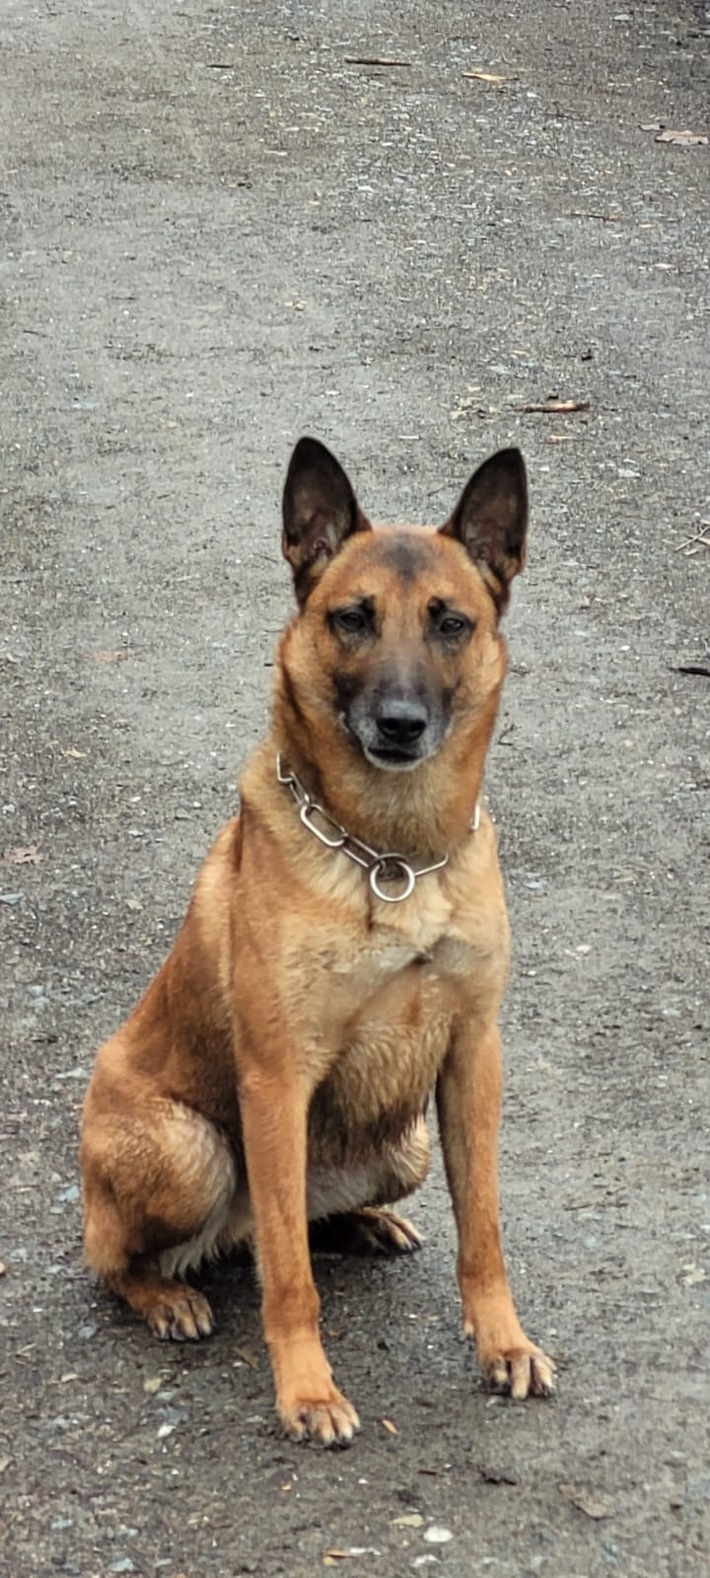 POL-D: Heerdt: Einbruch in Eventlocation - Junge Tatverdächtige von Diensthund Axel gestellt - Festnahme